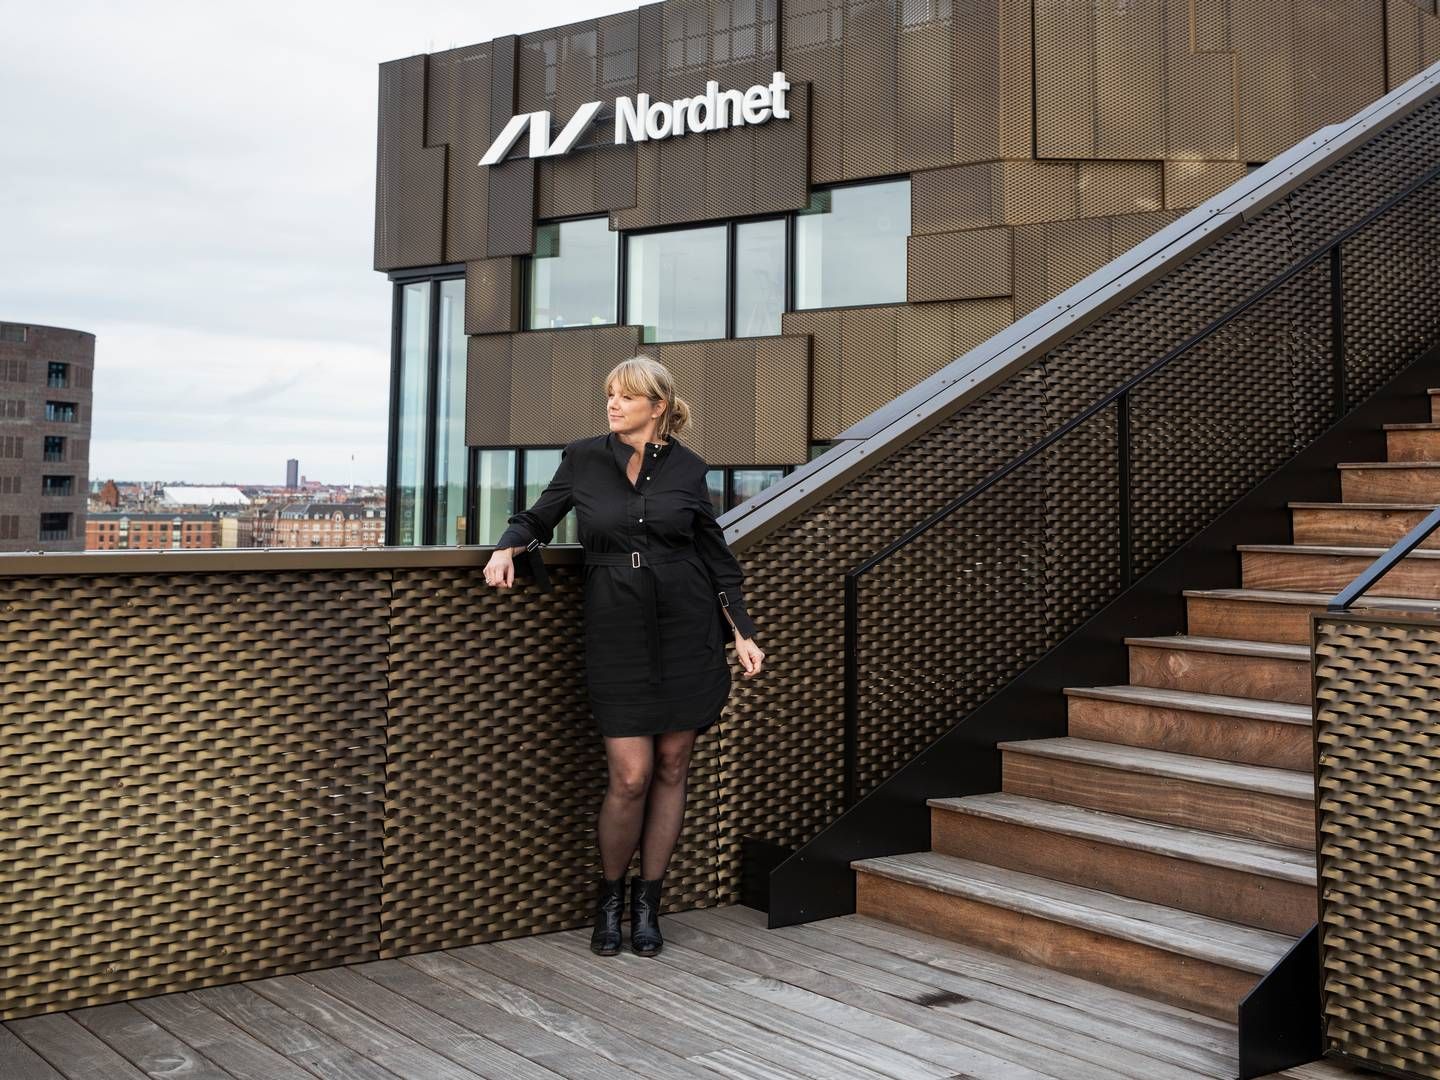 Nordnet havde i 2022 en kundetilgang på 41.500, hvilket er lavere end de foregående år, men landechef Anne Buchardt erklærer sig tilfreds. | Foto: Pr/ Nordnet